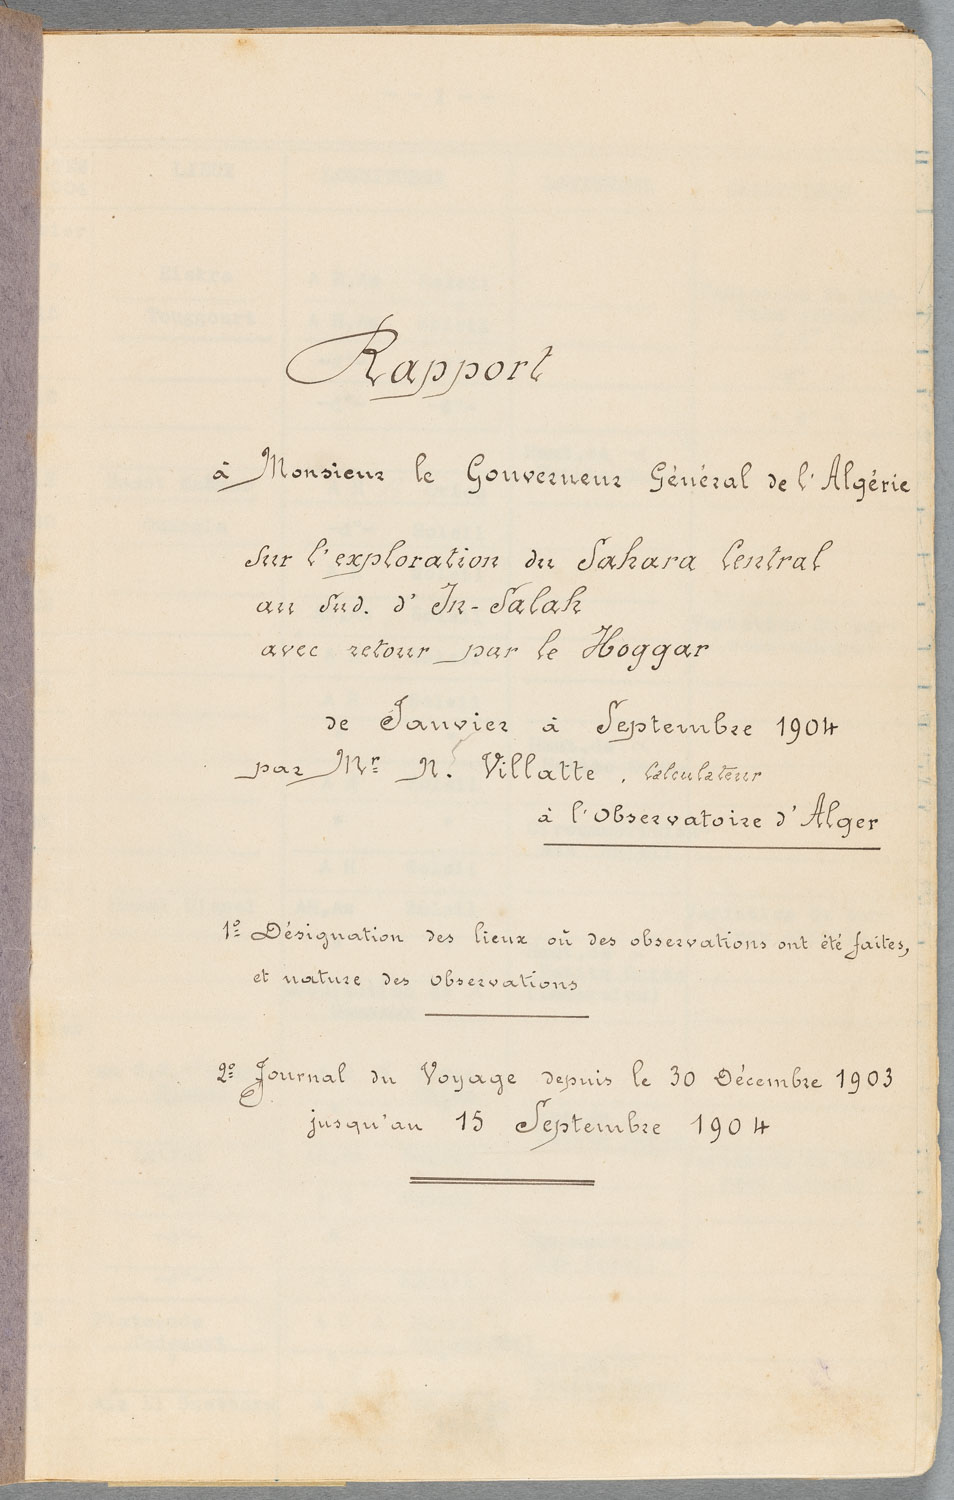 Rapport de Villatte au gouverneur général de l’Algérie sur son voyage d’observations astronomiques dans le Sahara, 1904 : page de titre, page de relevé d’observations